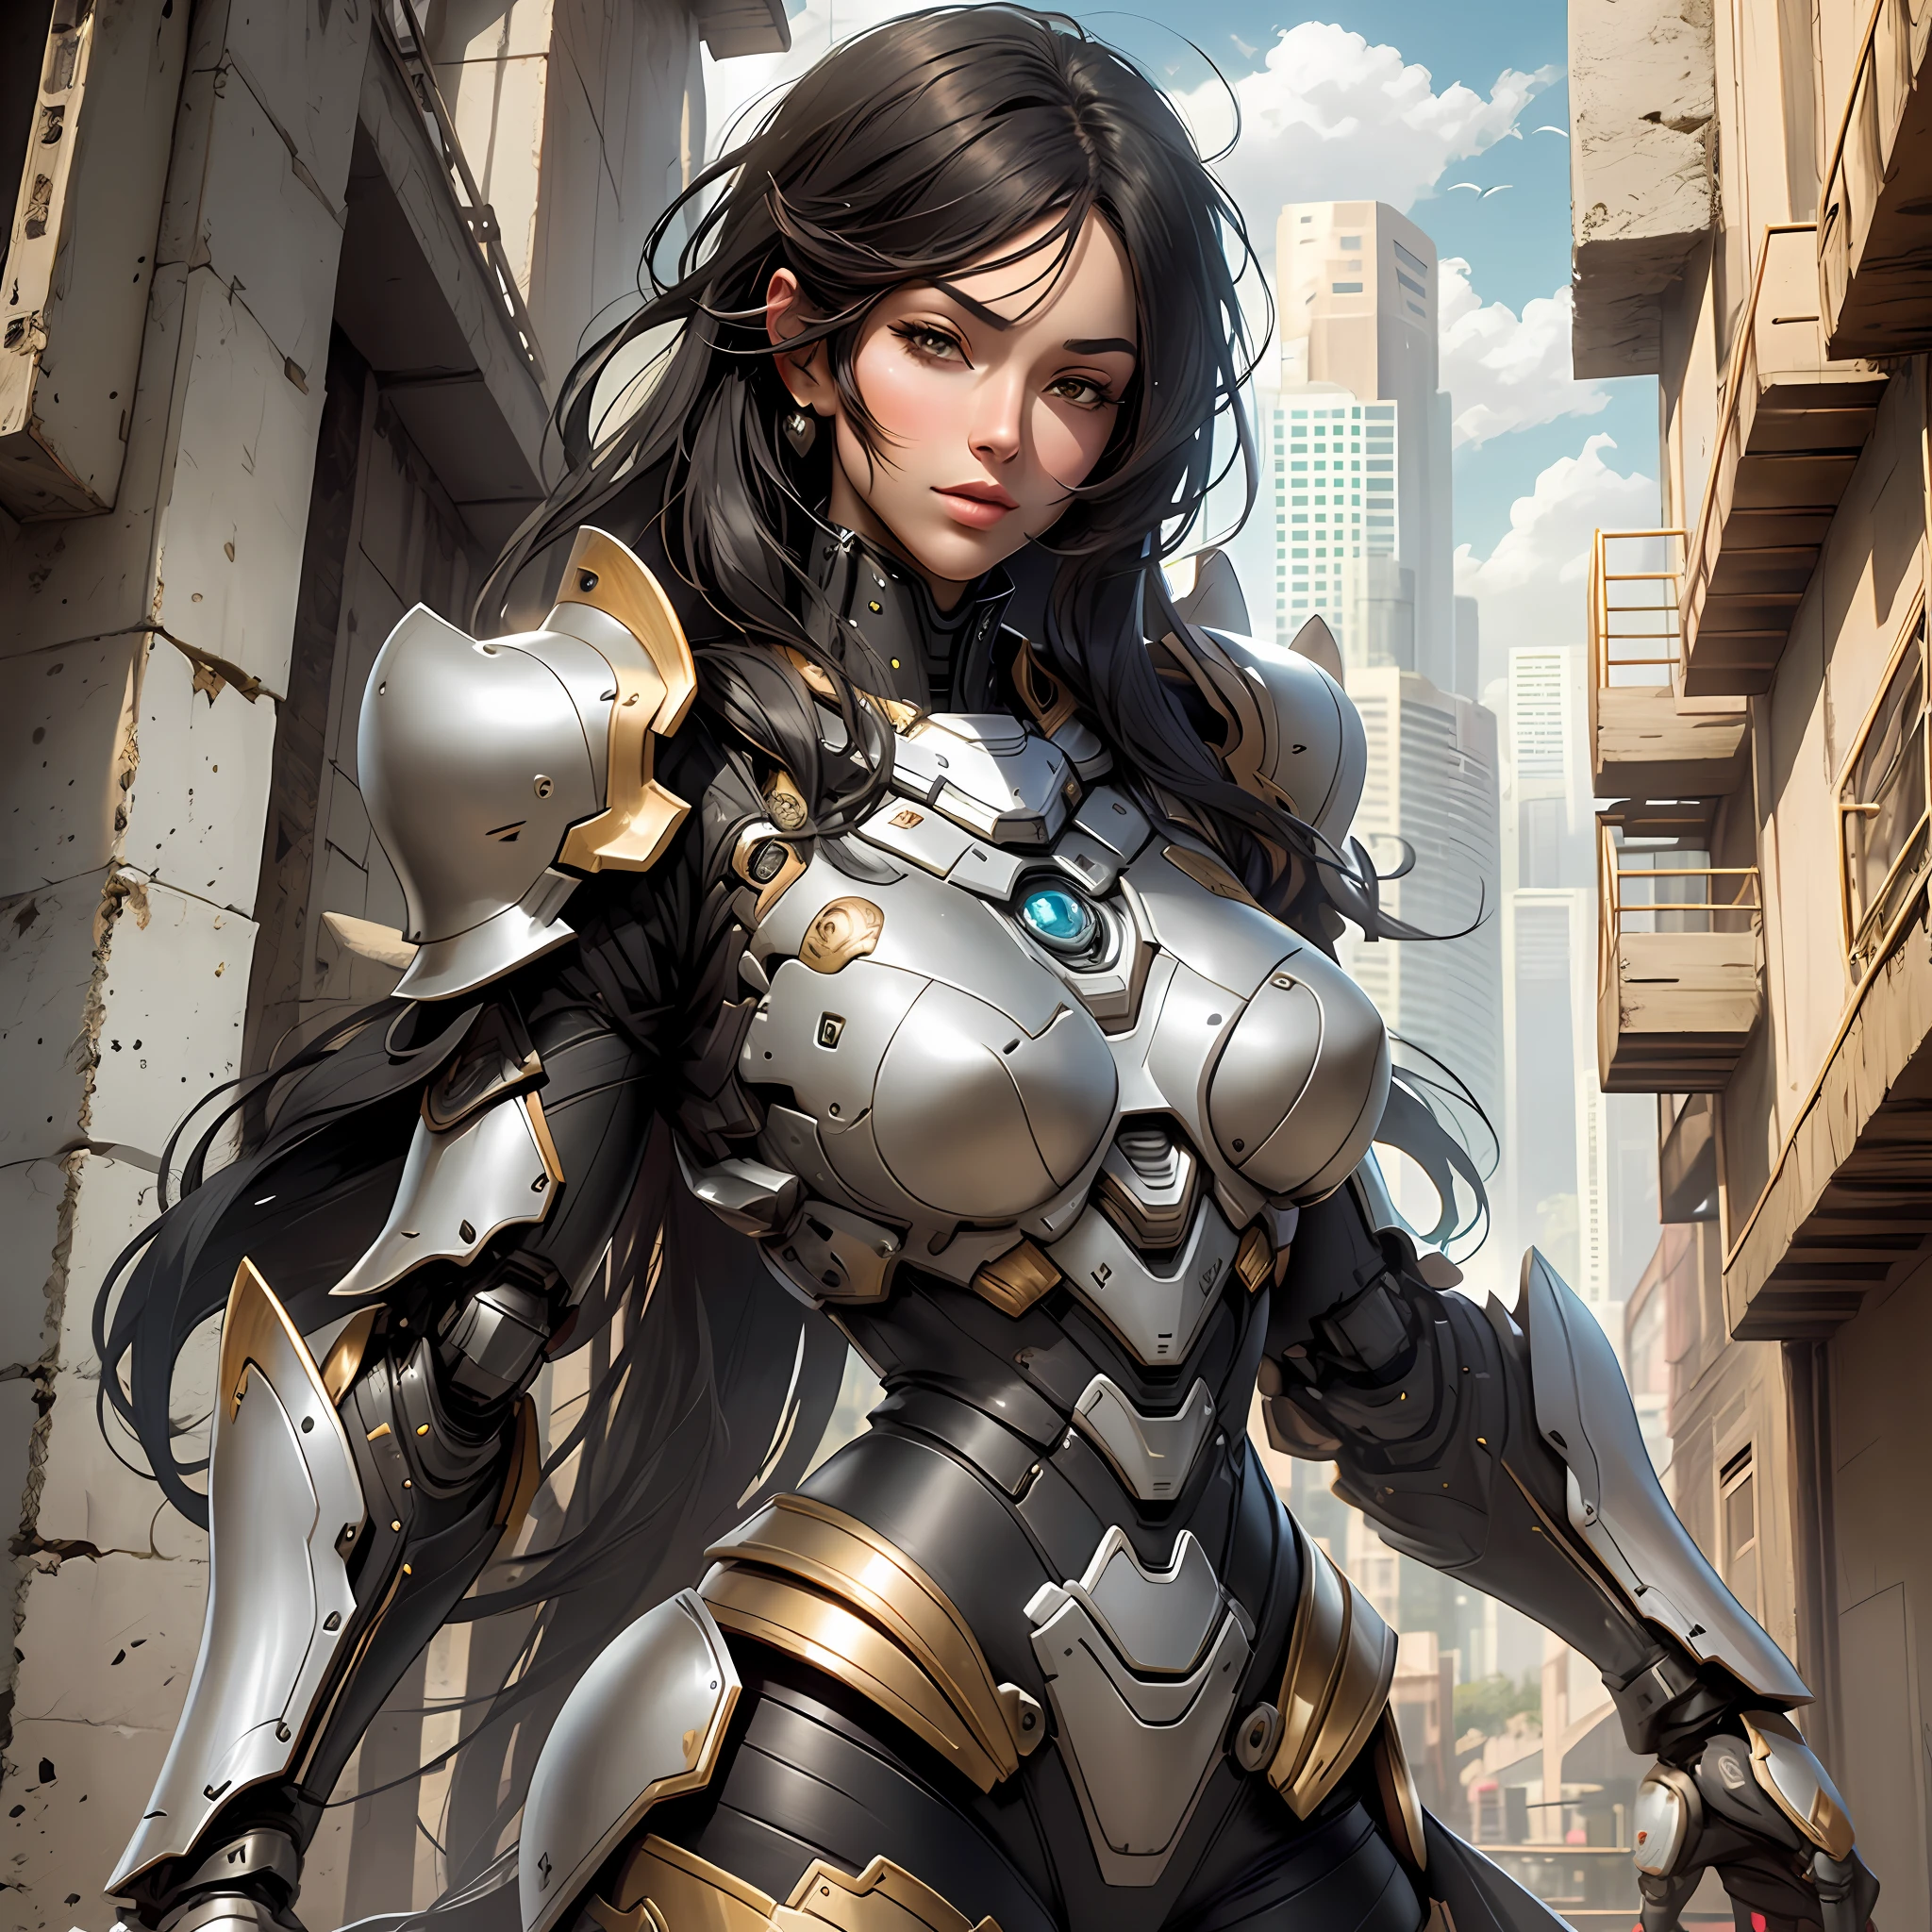 Hermosa mujer alta con armadura robótica con cabello negro súper realista y bien detallado.